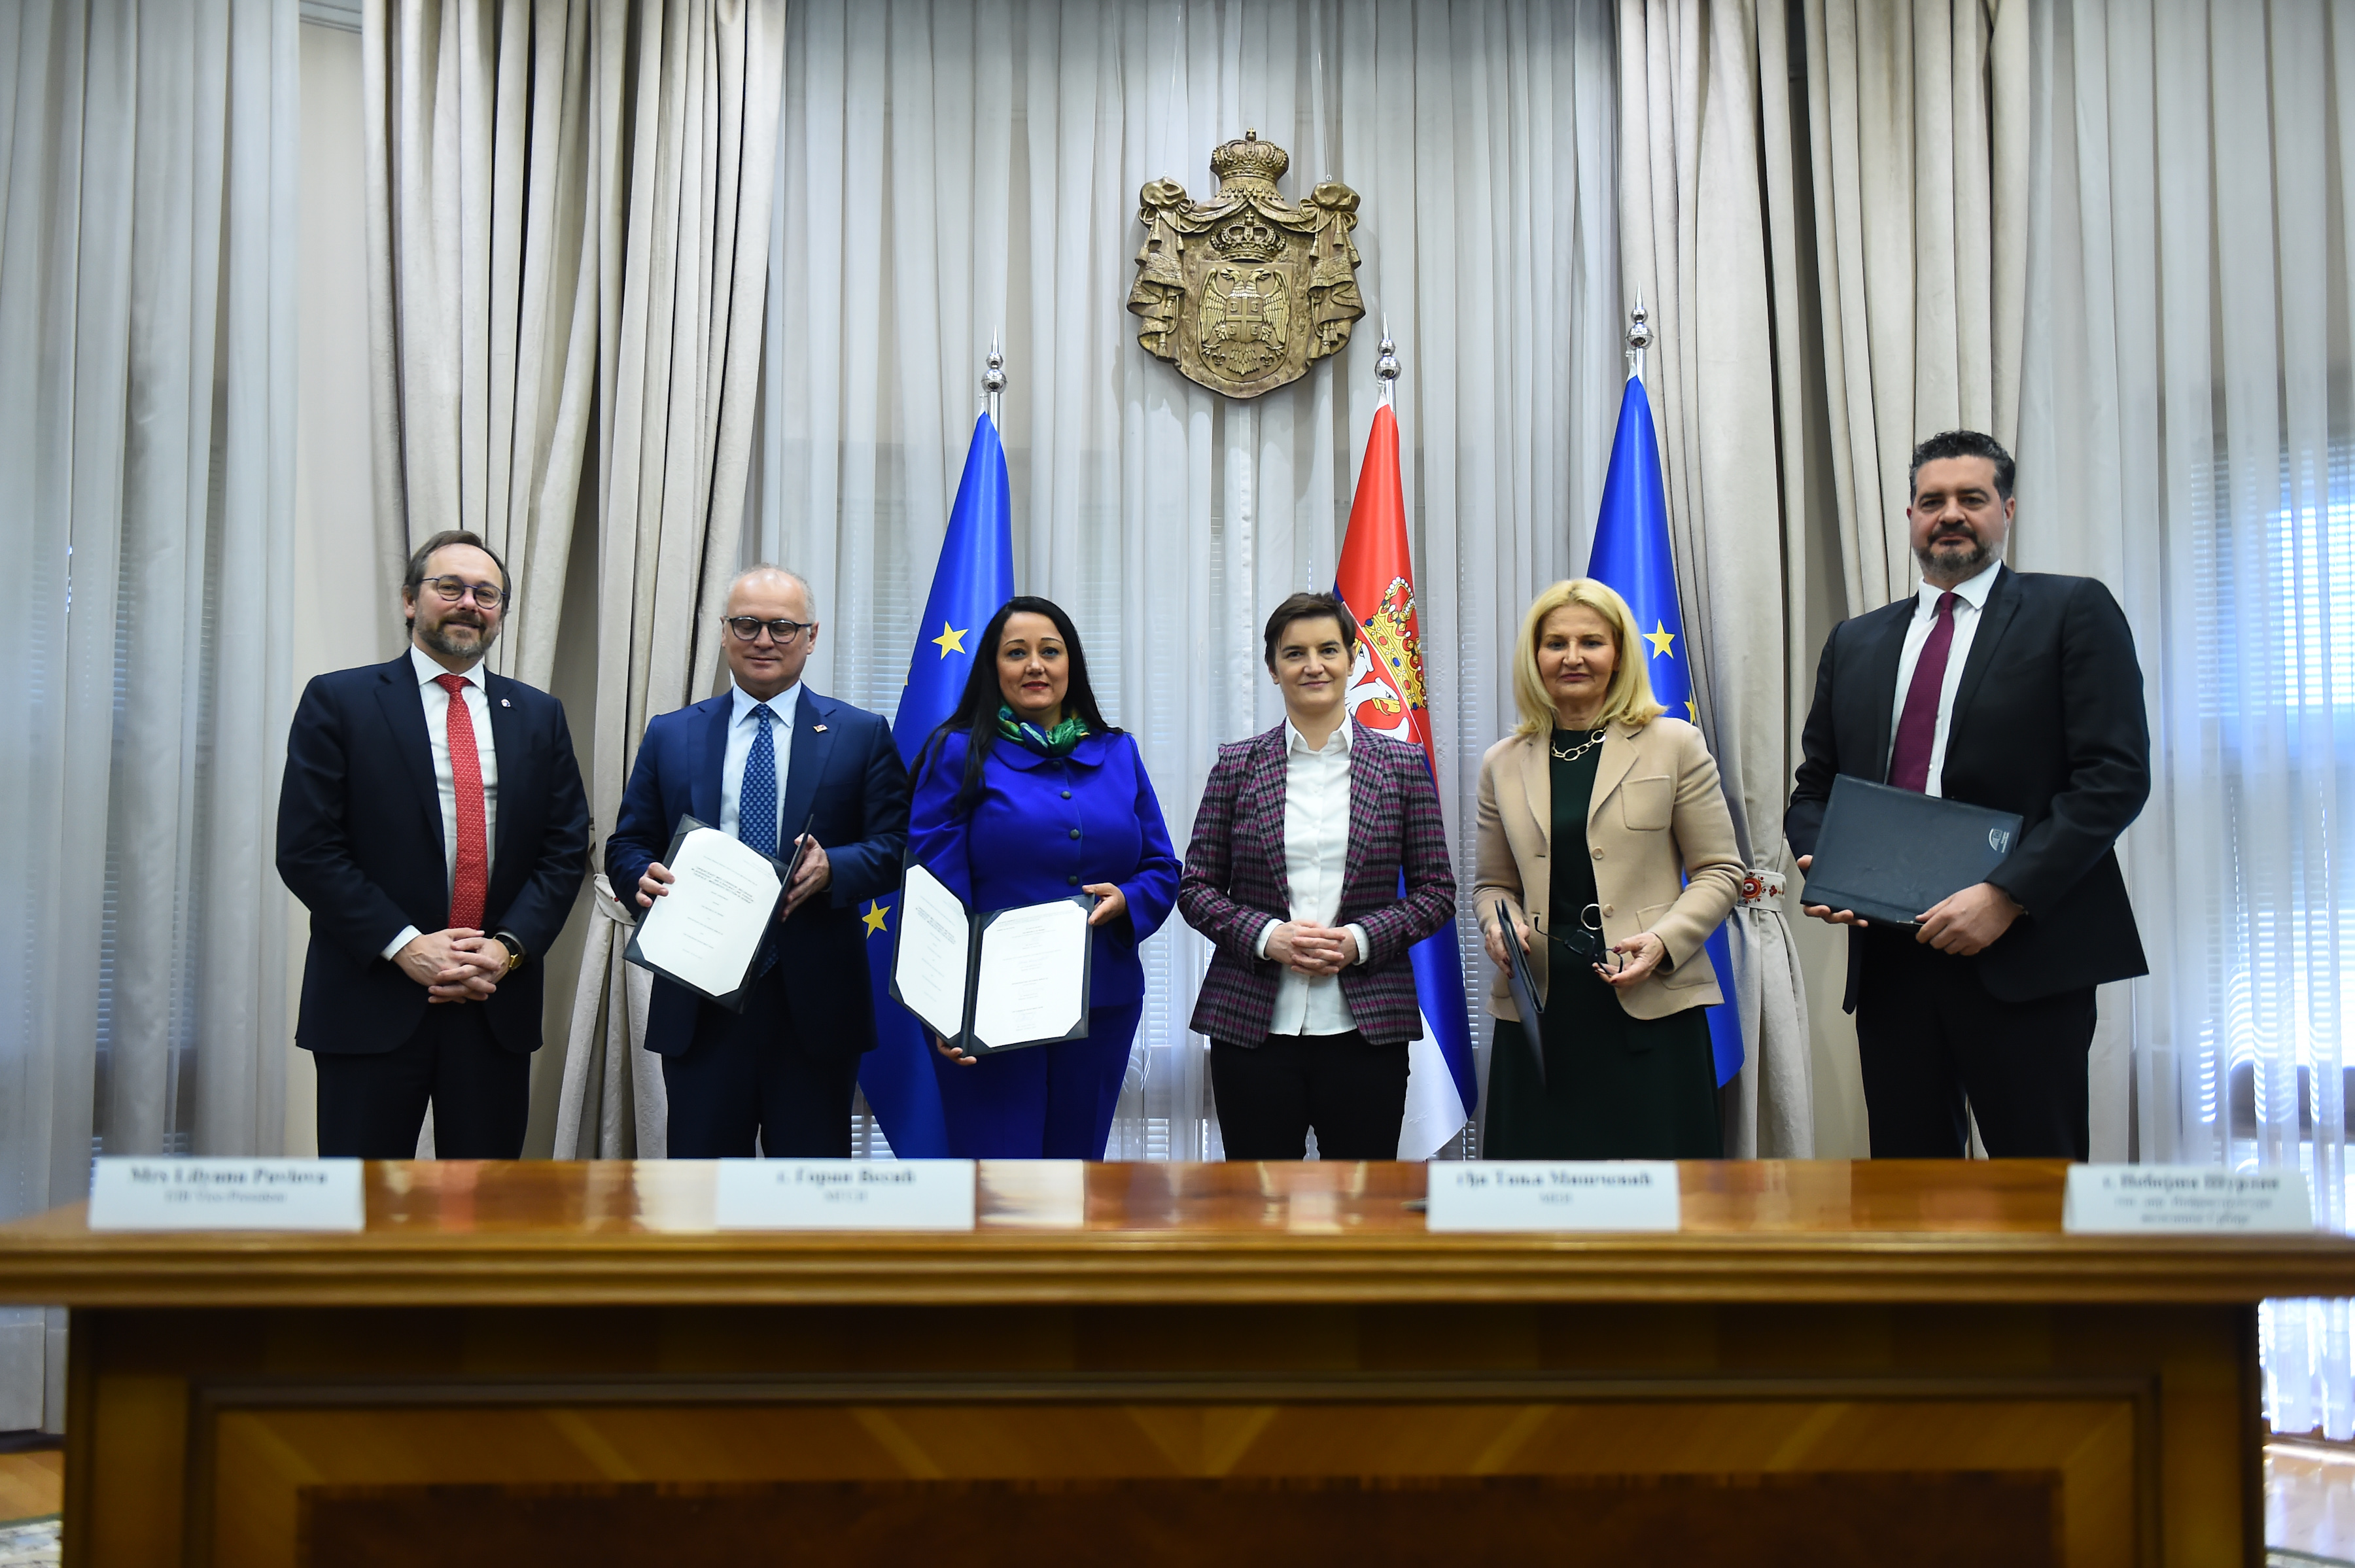 Sa EIB potpisan grant od 175 mln evra, druga tranša za brzu prugu Beograd - Niš 